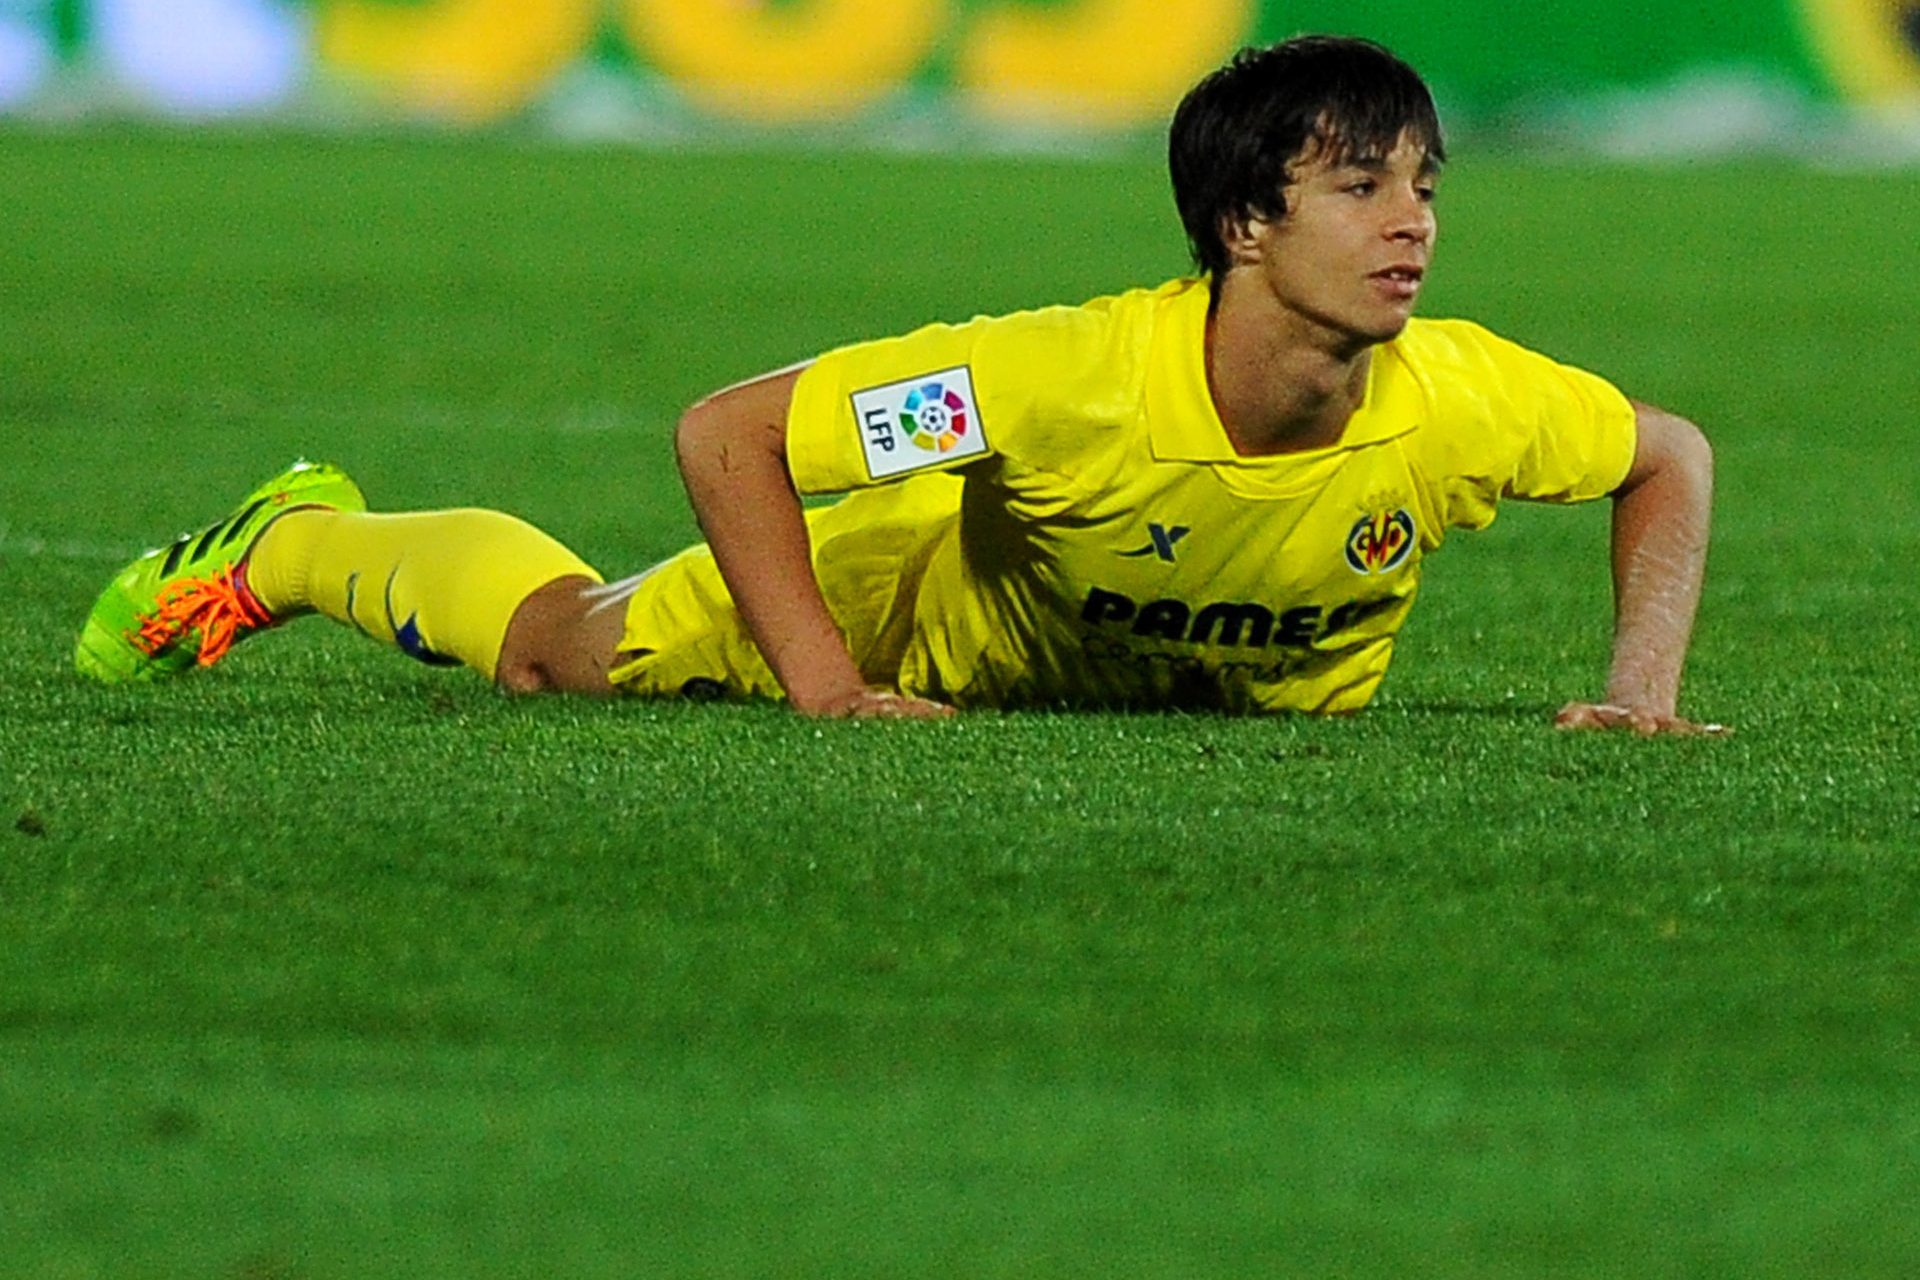 En su primera temporada fue cedido al Villarreal